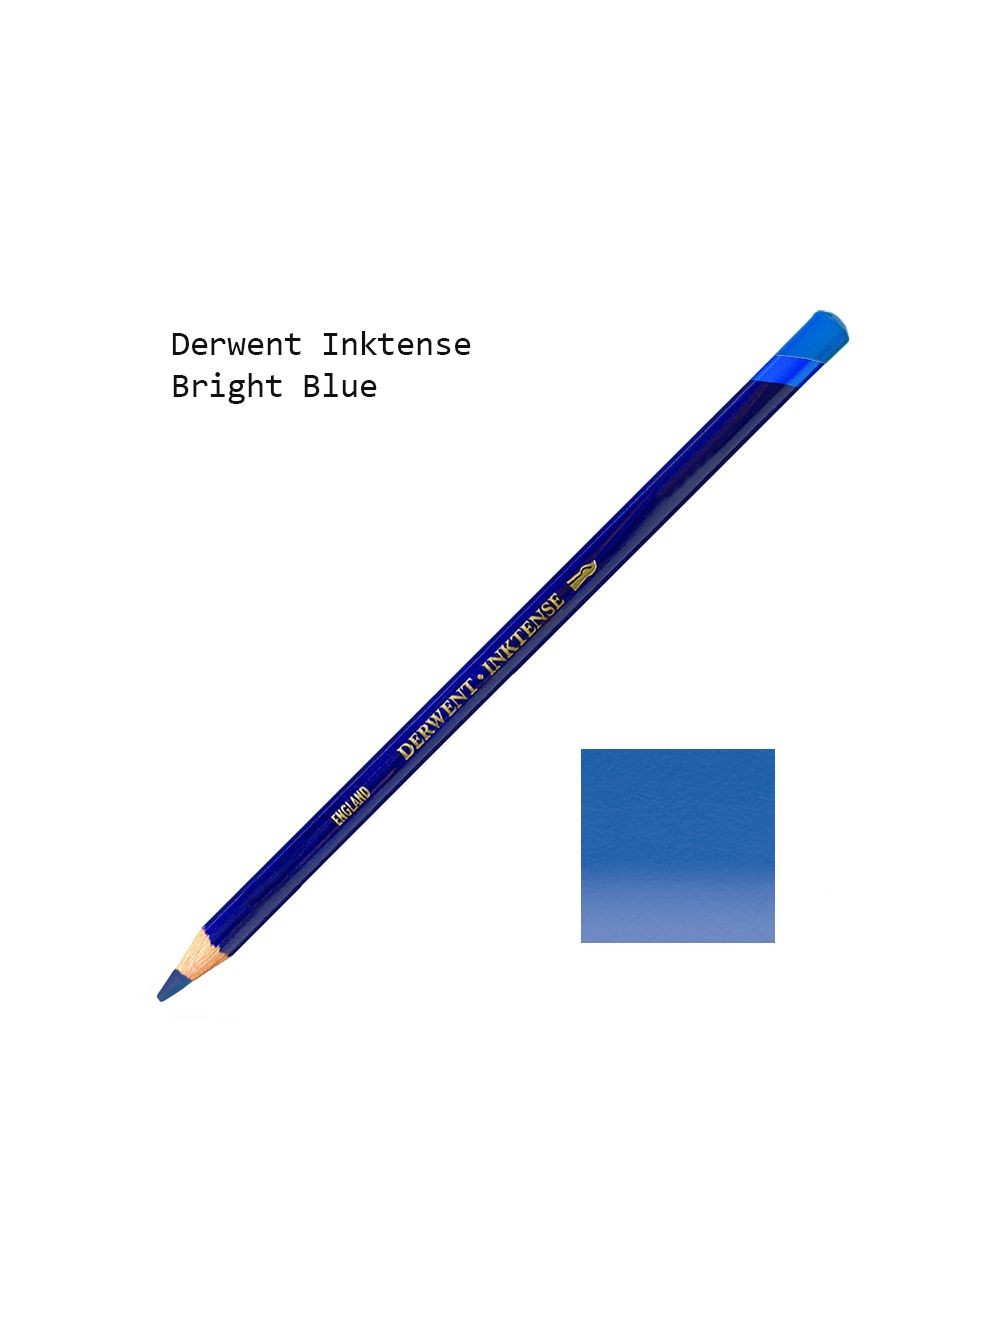 Derwent Inktense Pencil Sets